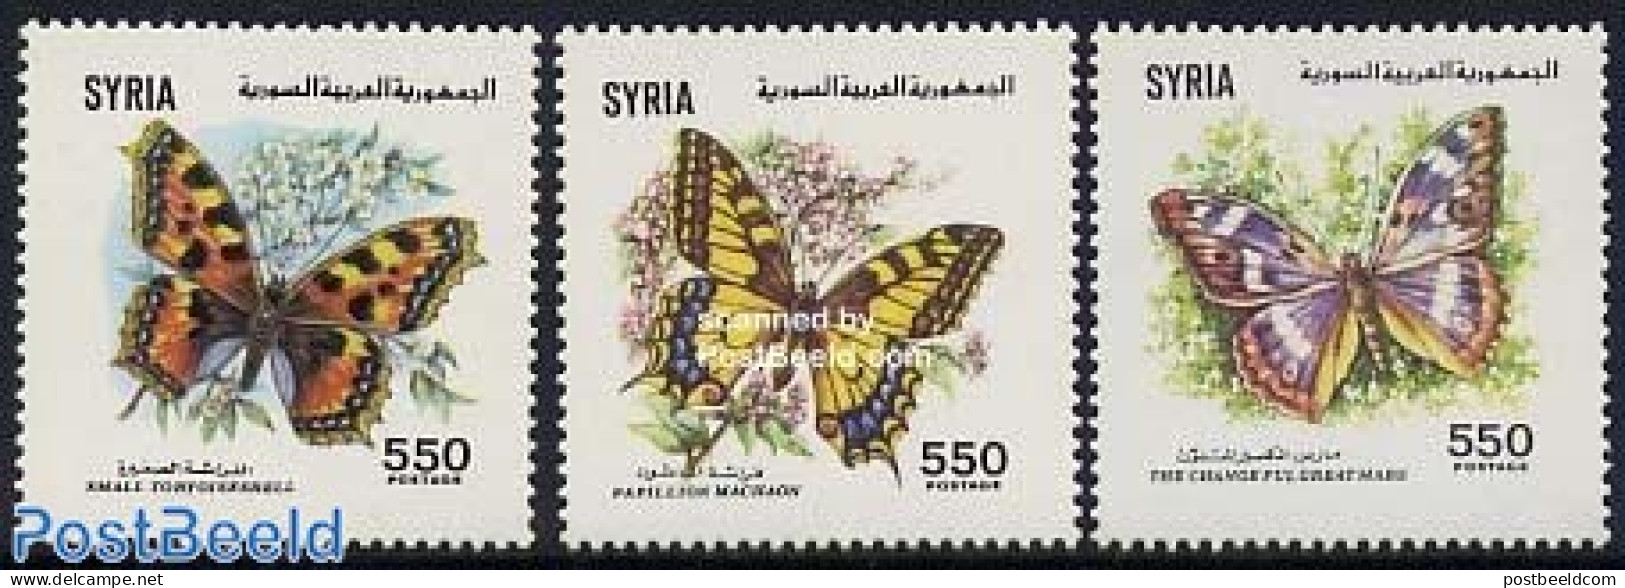 Syria 1991 Butterflies 3v, Mint NH, Nature - Butterflies - Syrien